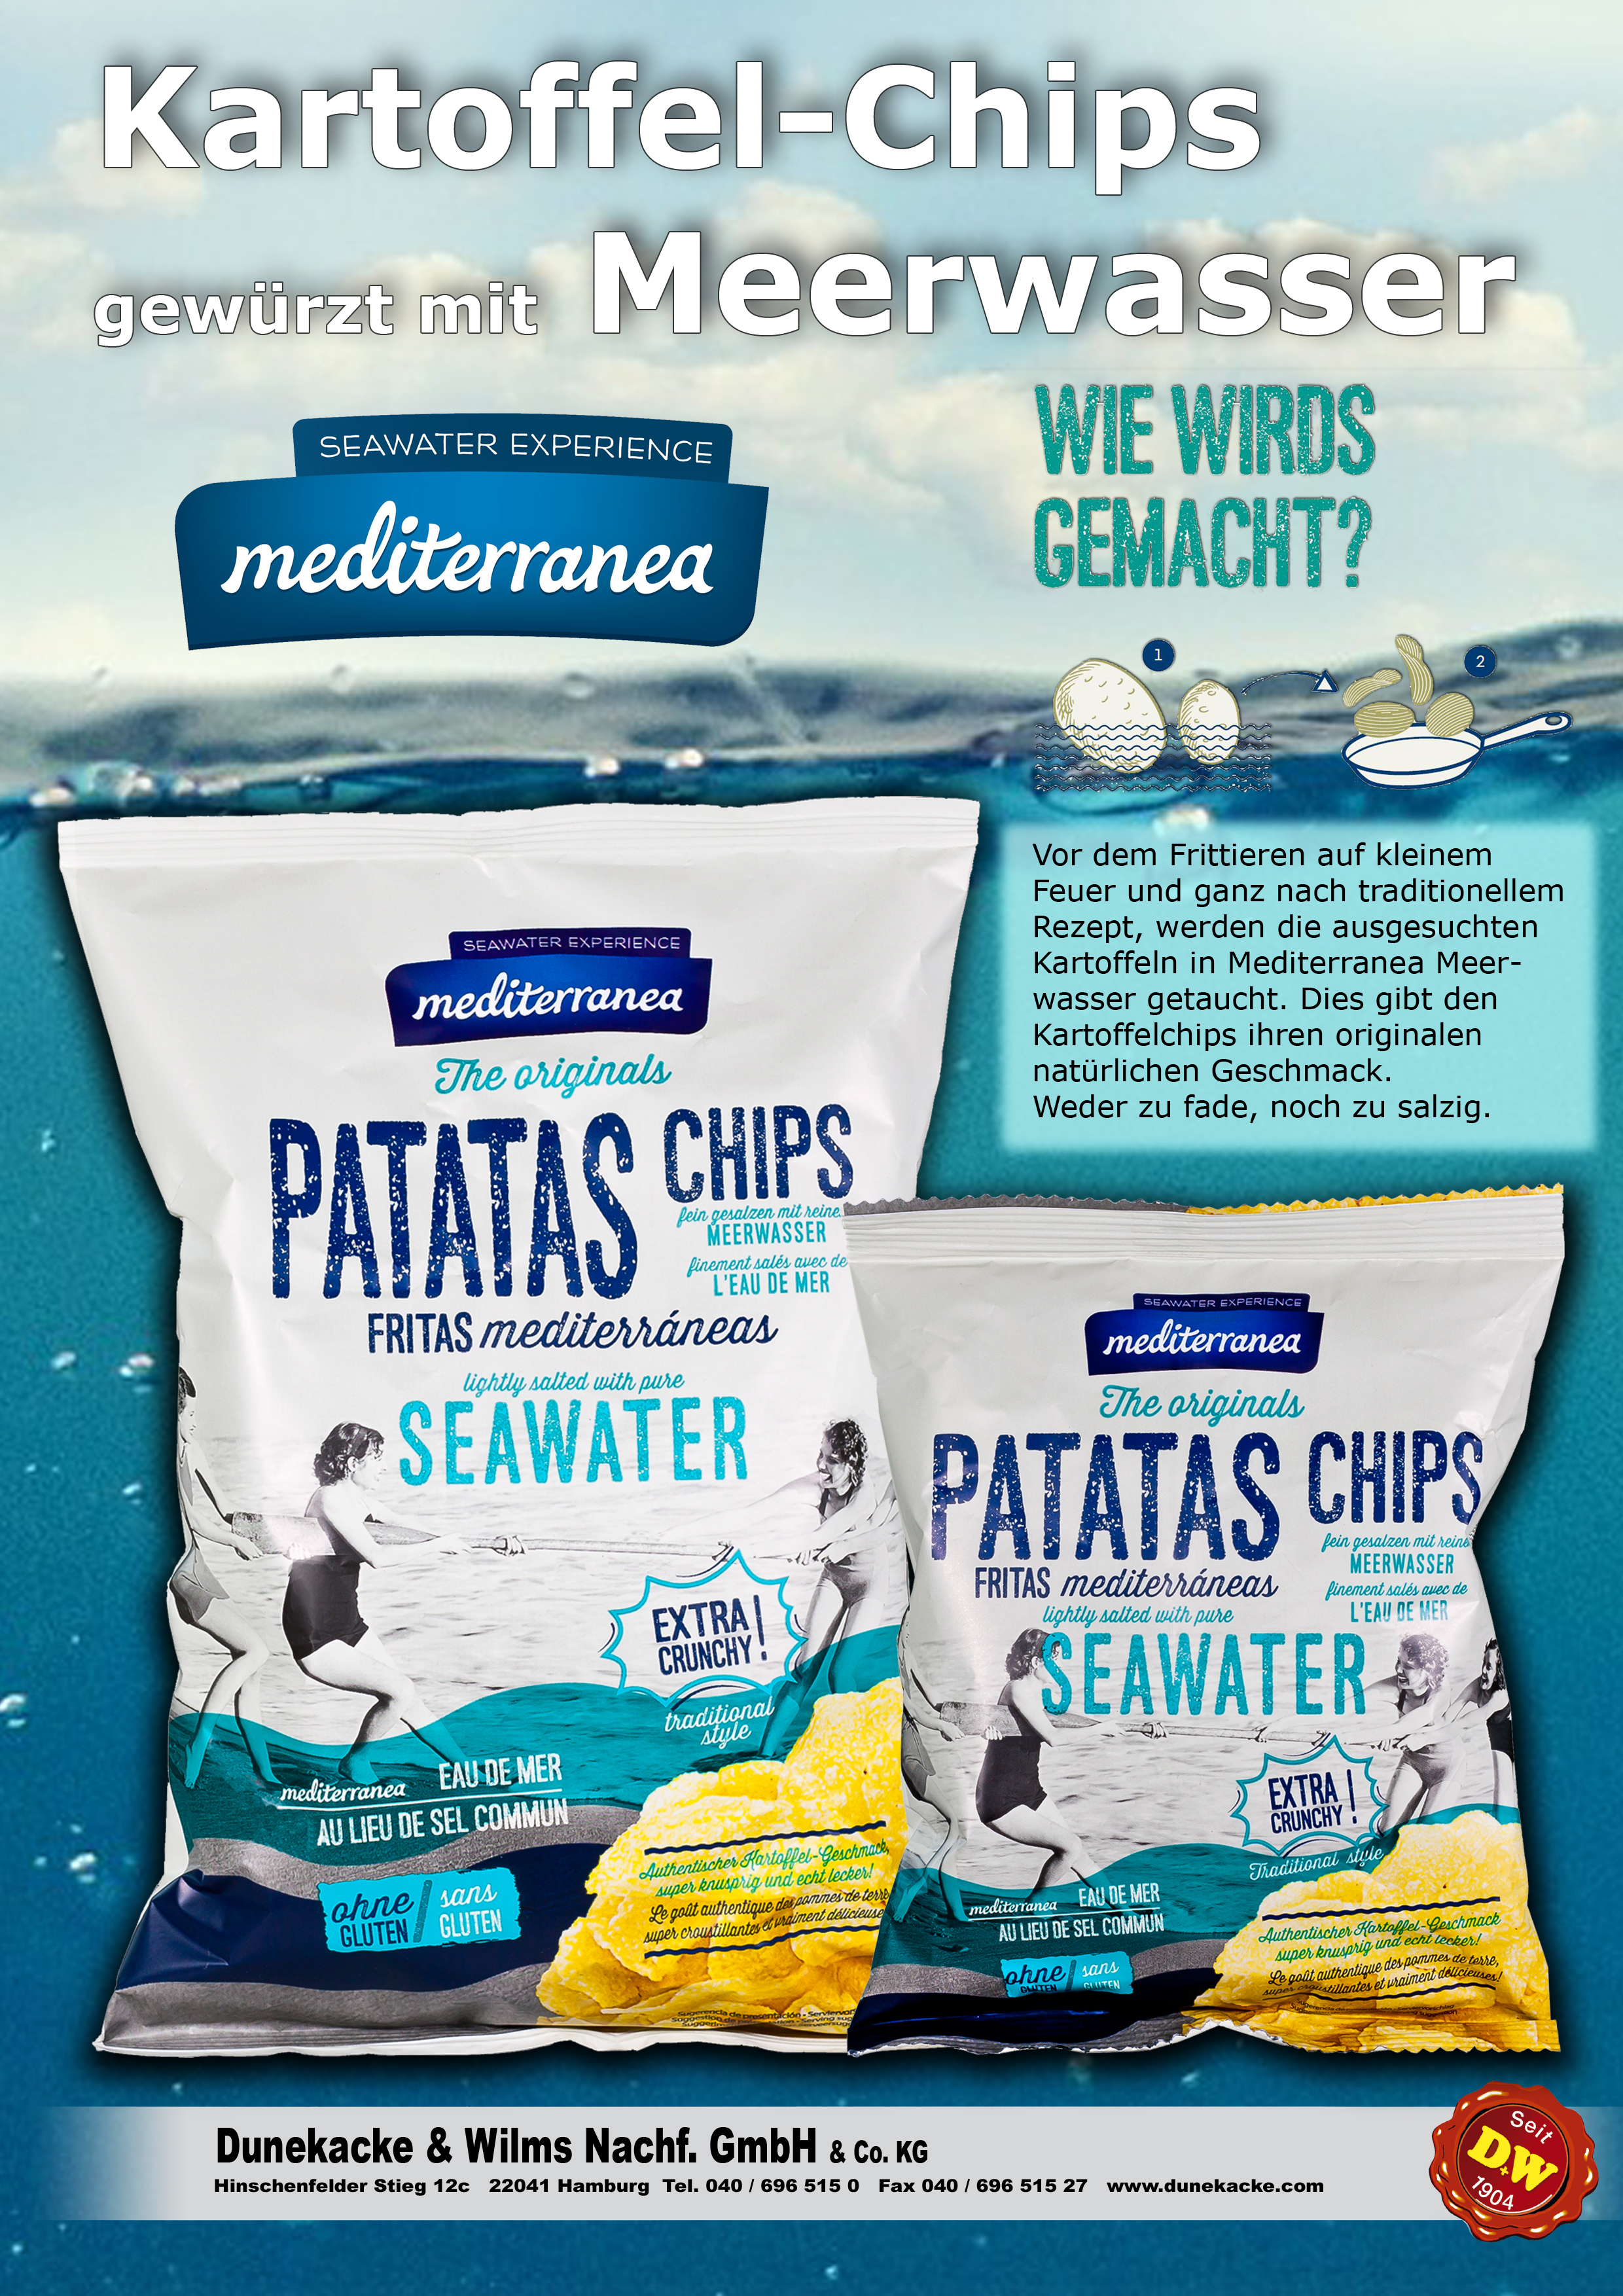 Chips mit Meerwasser